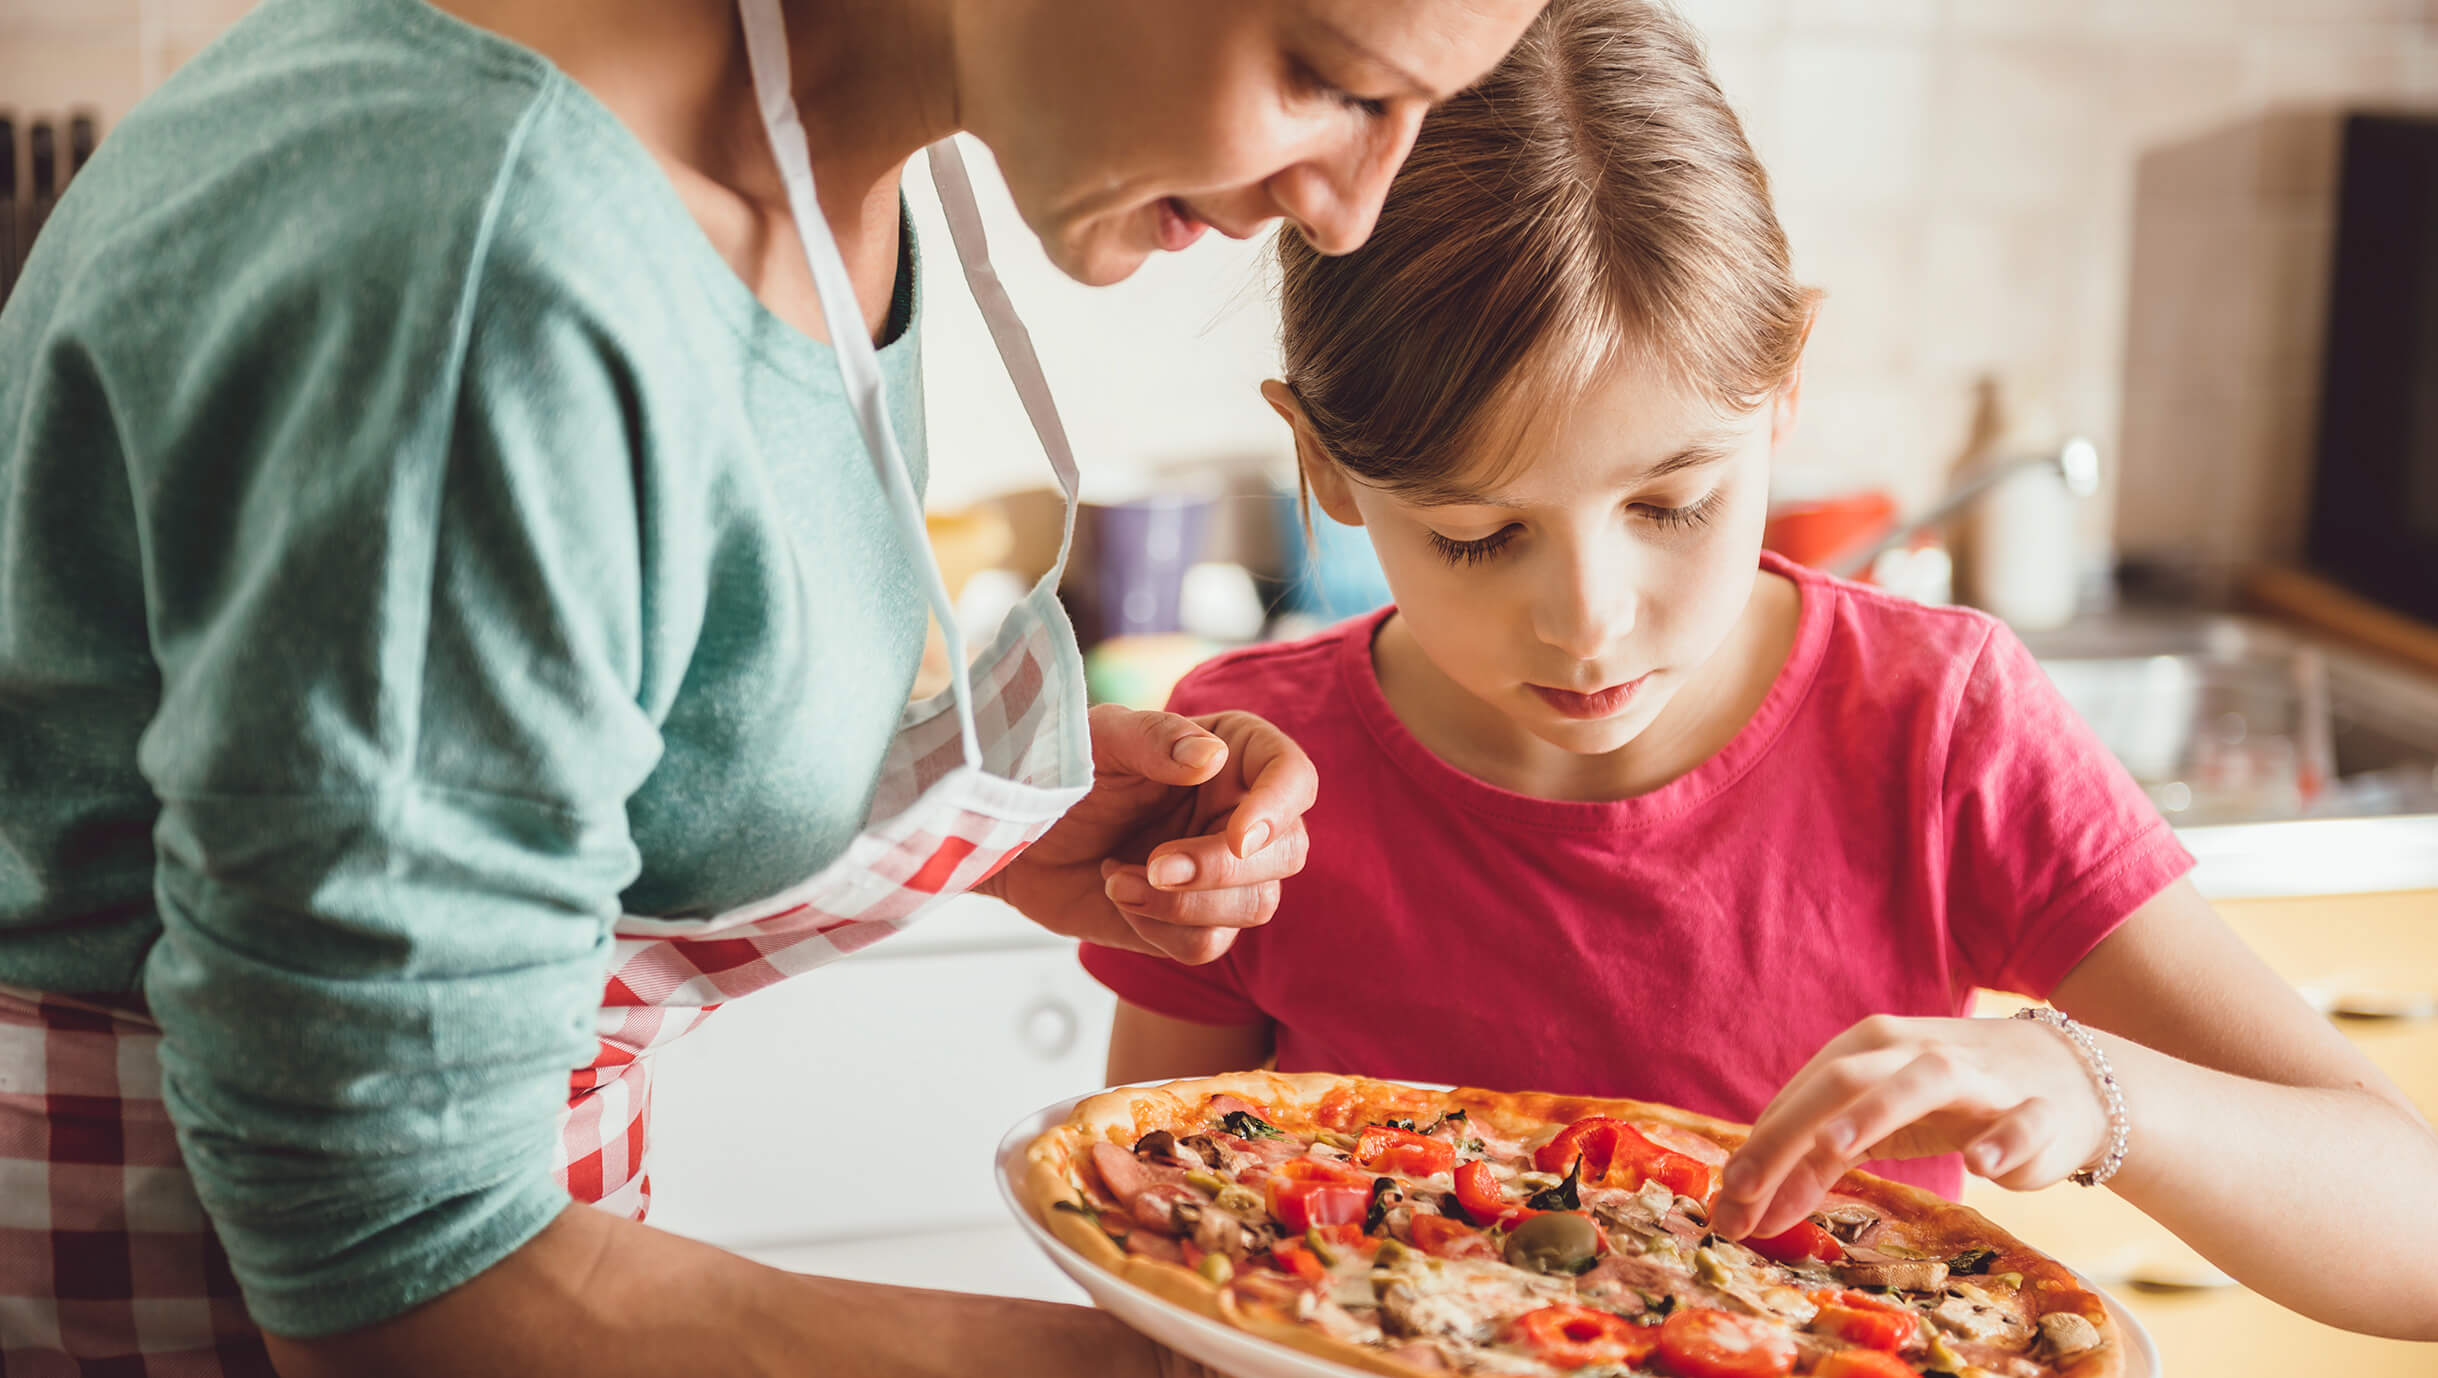 Diciamo “Sì” ai giochi in cucina! Insegna a mangiare ai tuoi figli giocando con il loro cibo